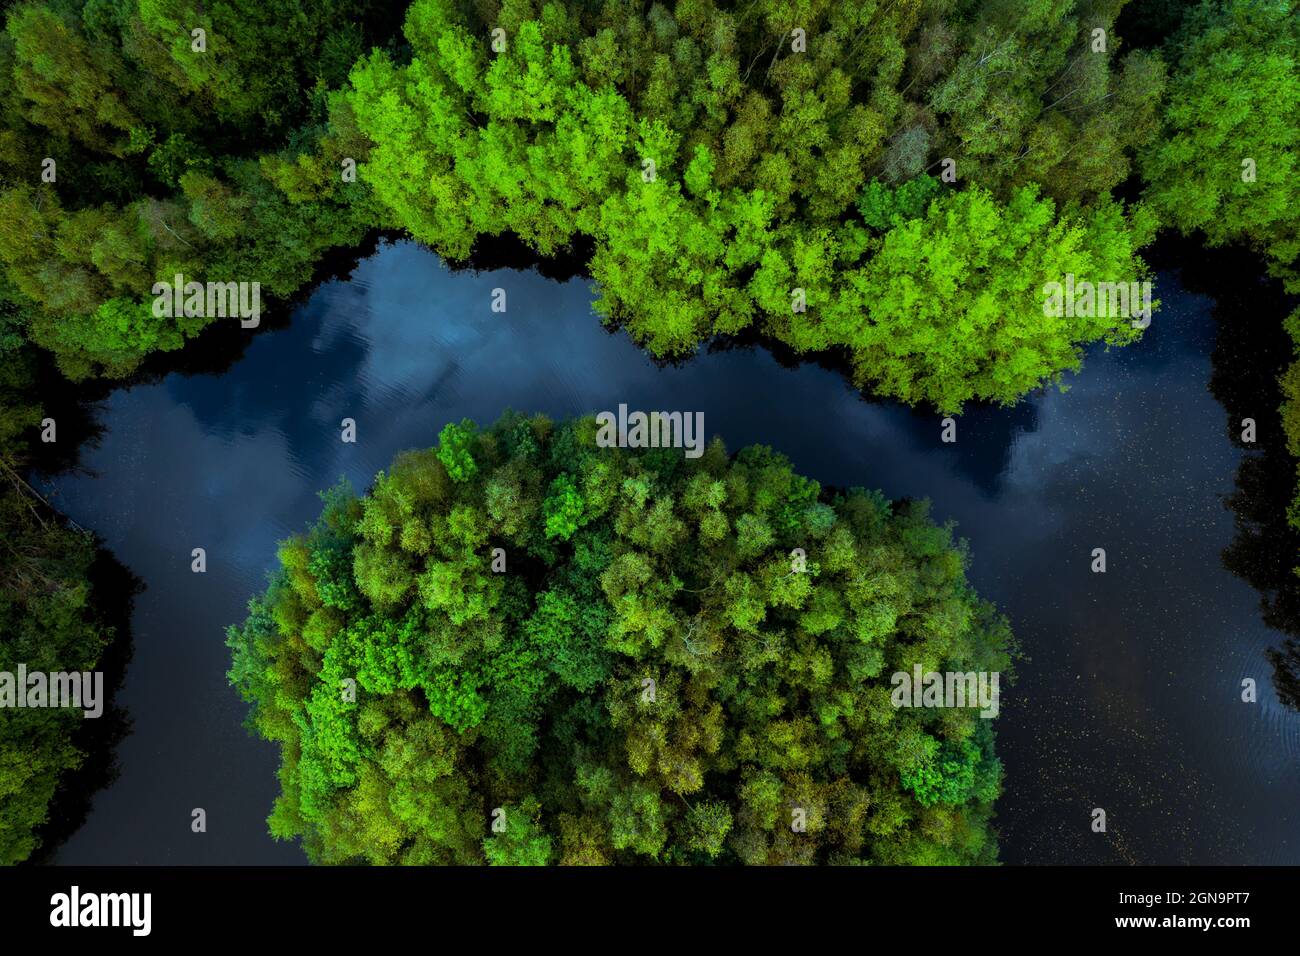 Vue aérienne de la végétation luxuriante de la forêt tropicale couverte d'îles couvertes d'arbres entourées d'eau de rivière dans un environnement tropical d'Amazonie ou de Thaïlande Banque D'Images